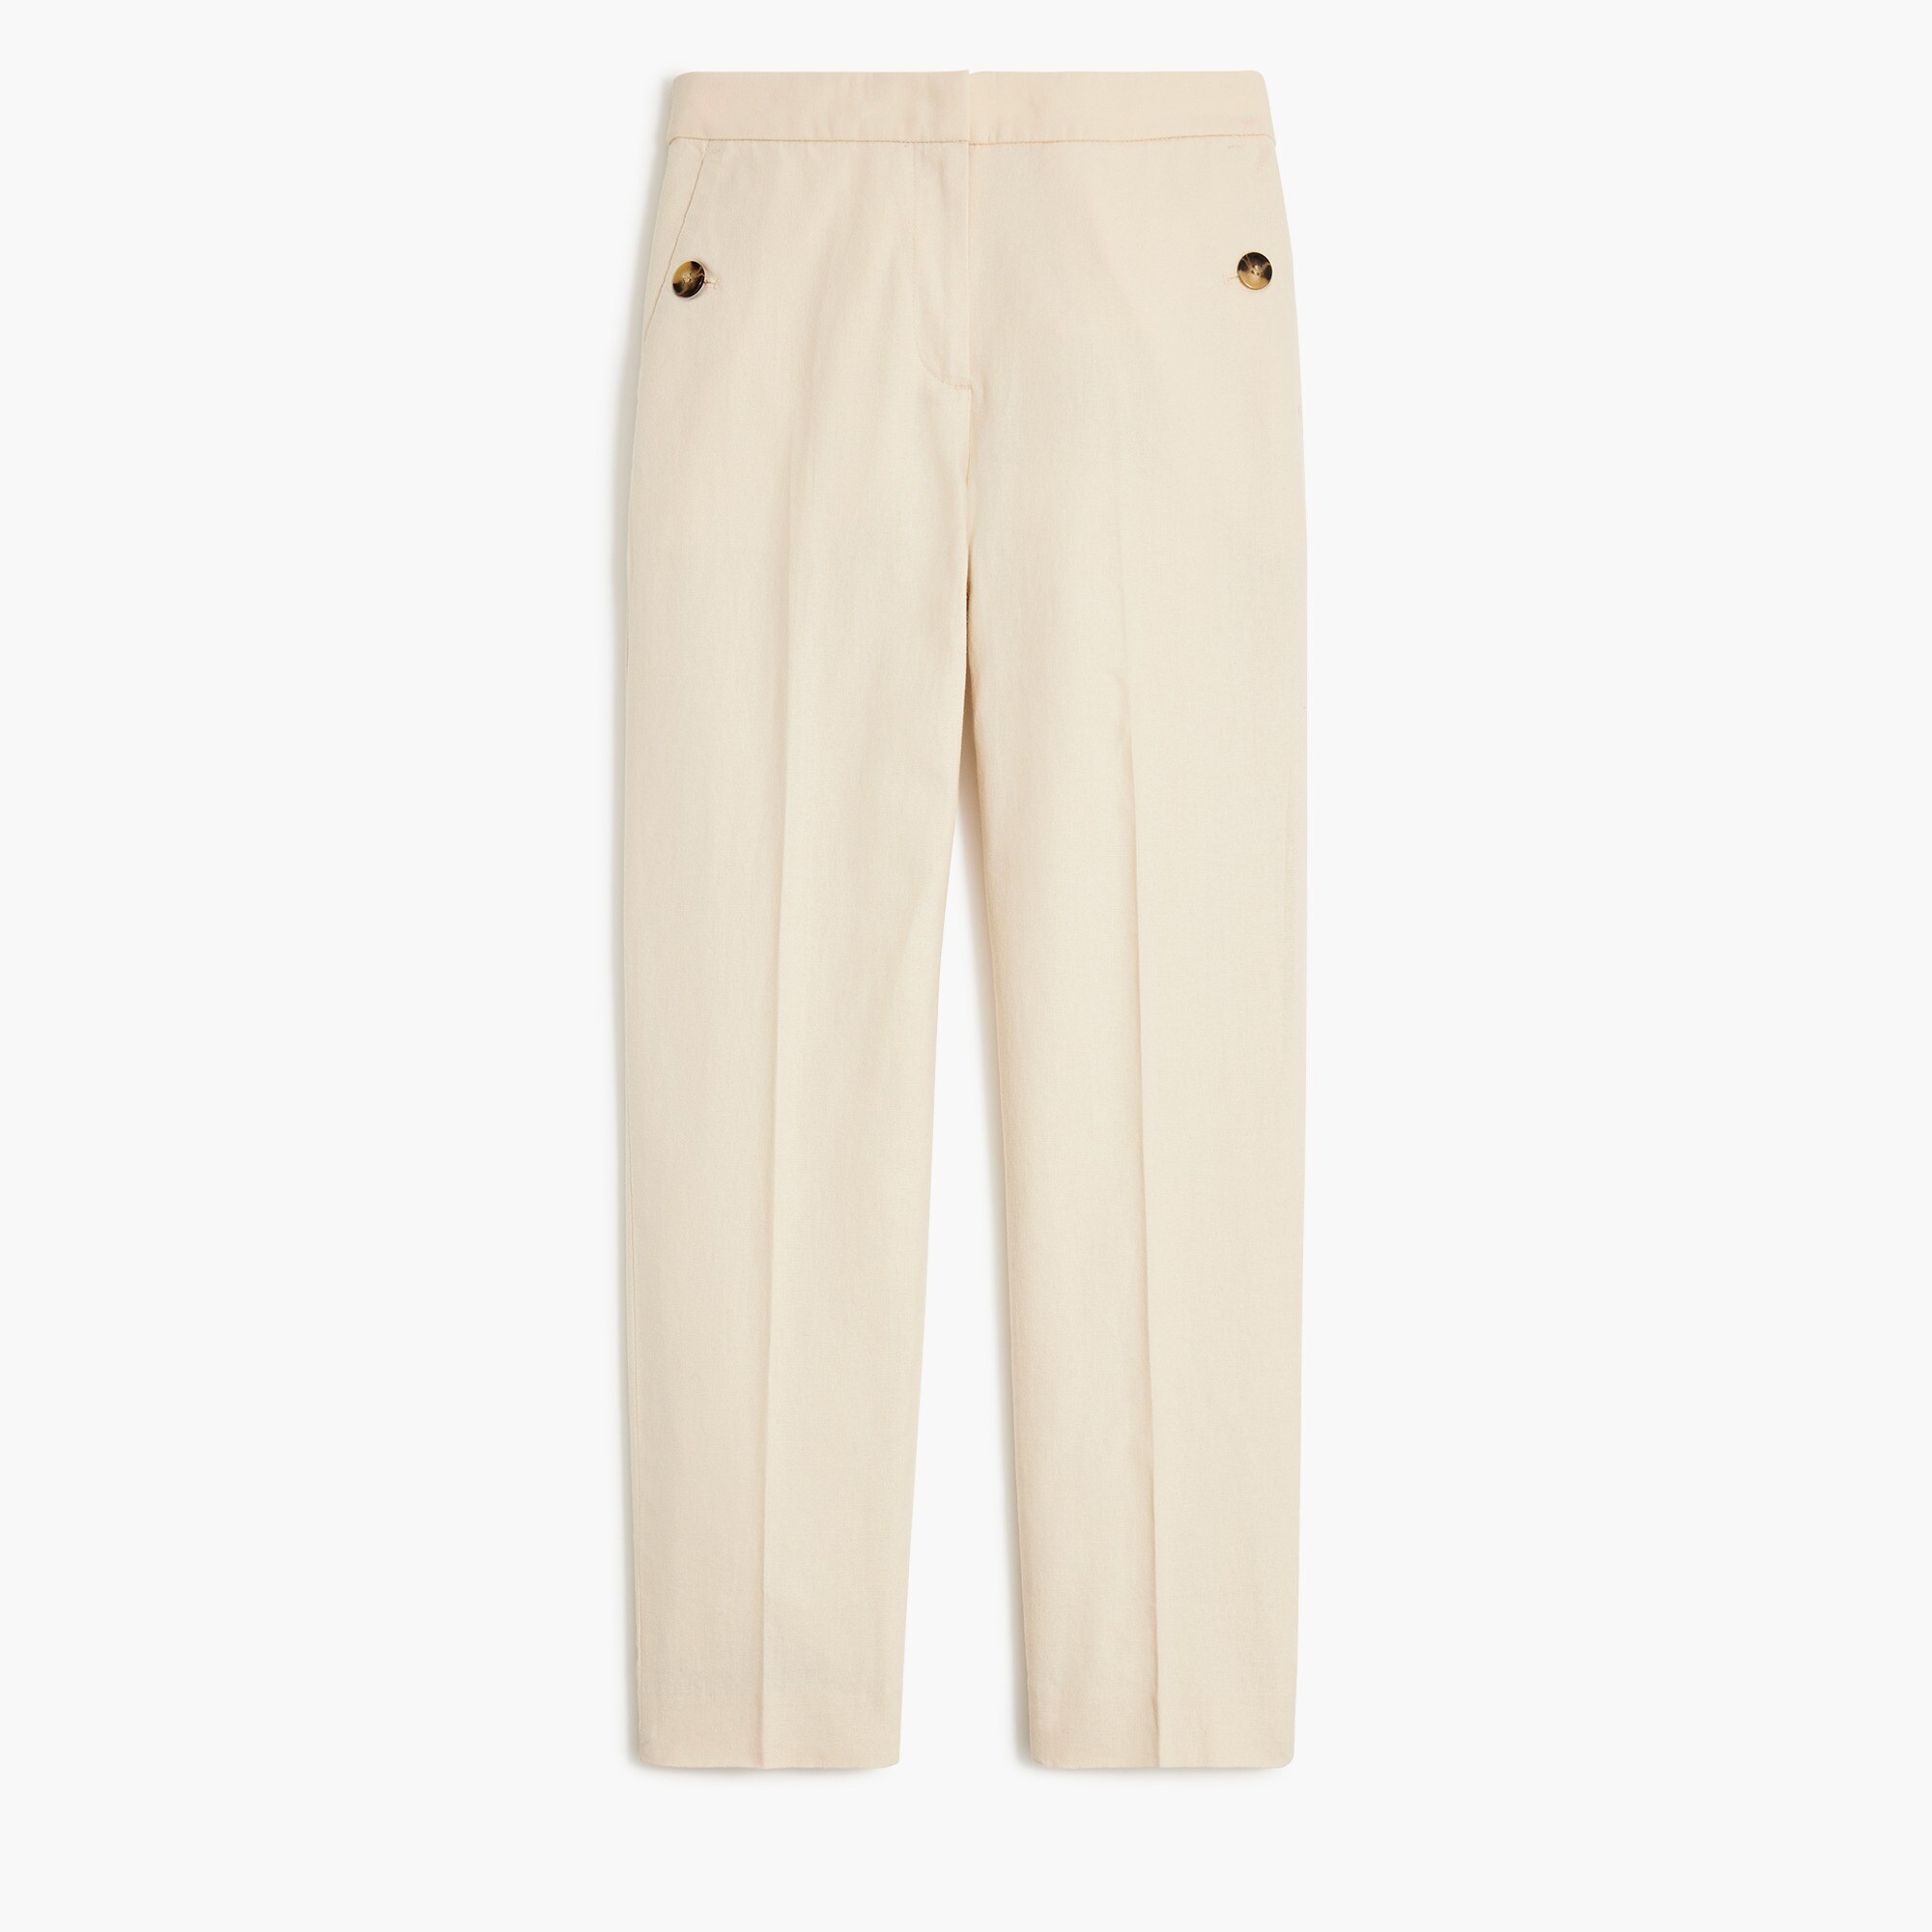  Linen-cotton blend elastic-back sailor pant